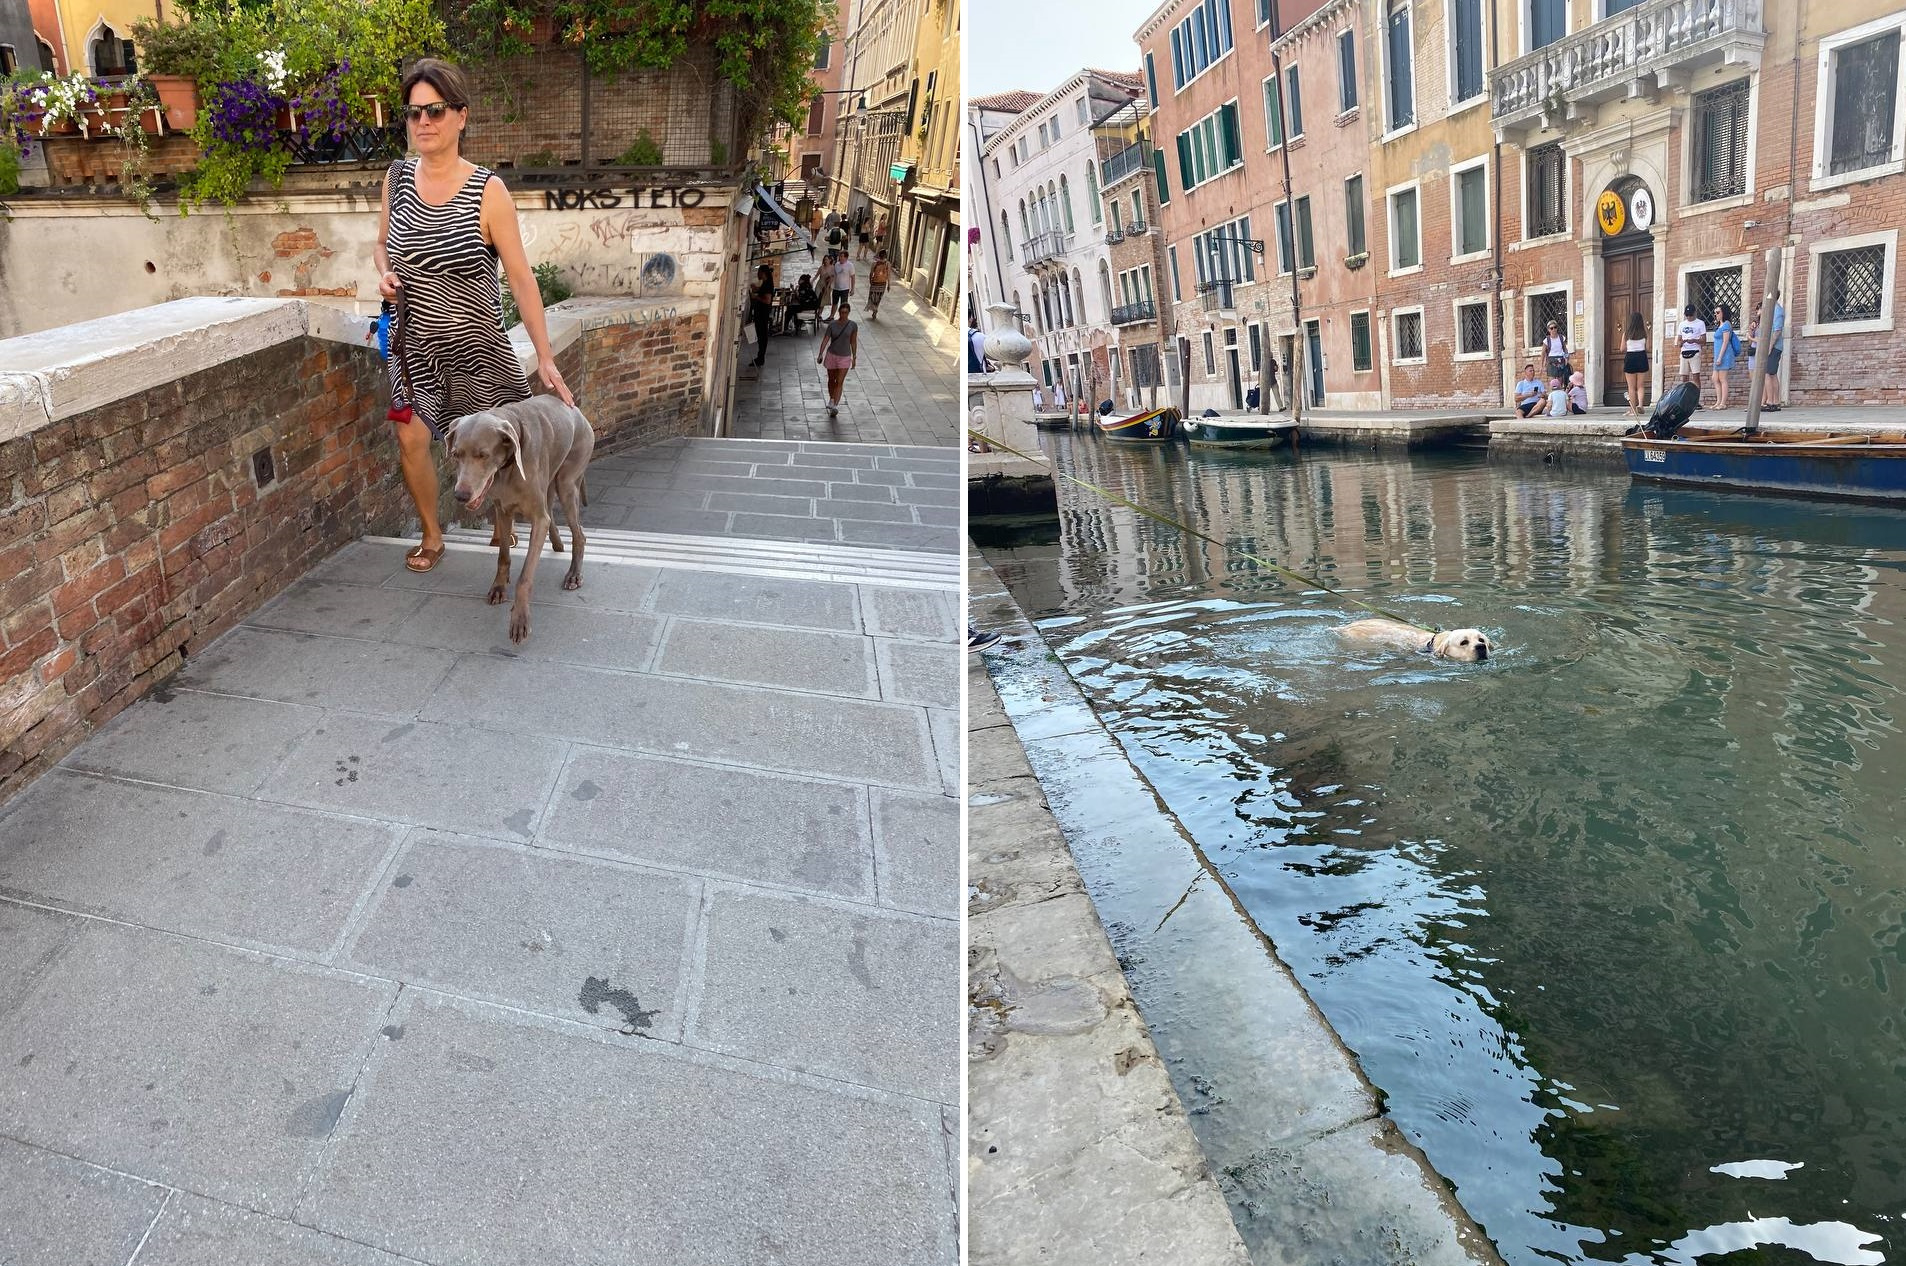 Венецианцы на мягких лапах встречались очень часто, один даже показал, как умеет плавать (никто не был оштрафован)